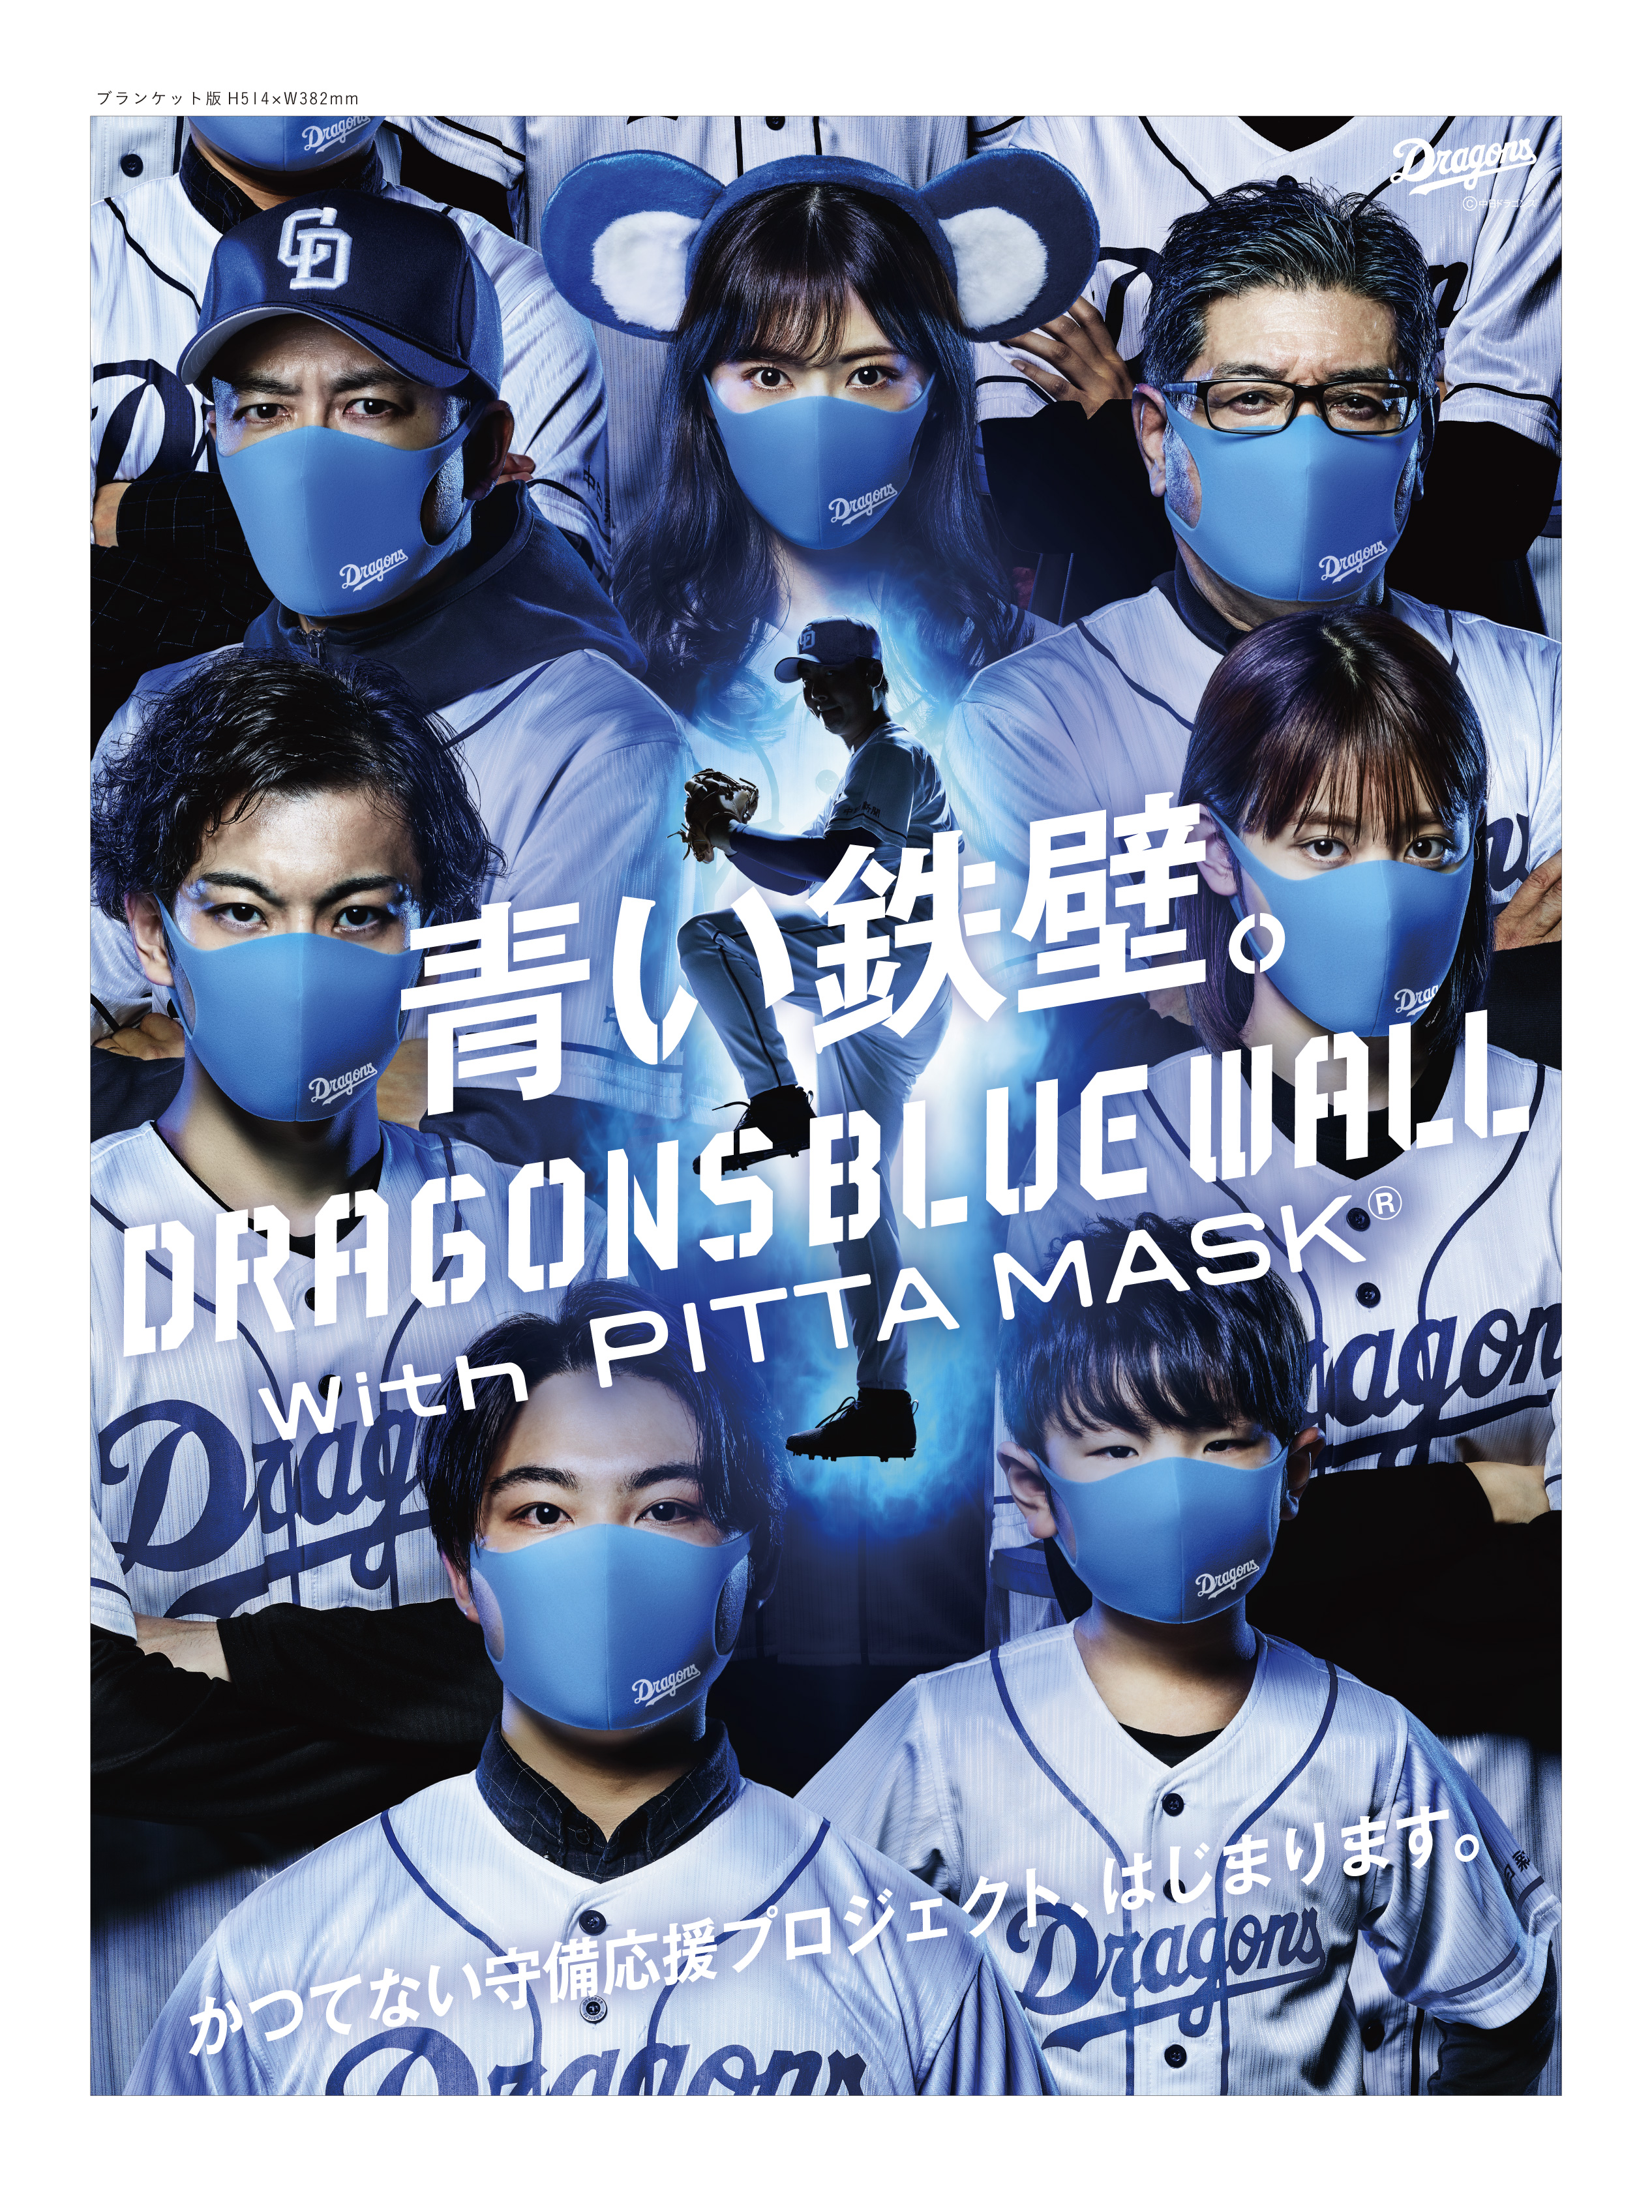 かつてない 守り 守備 の応援プロジェクト Dragons Blue Wall With Pitta Mask 6月12日 金 プロジェクト始動 株式会社アラクスのプレスリリース